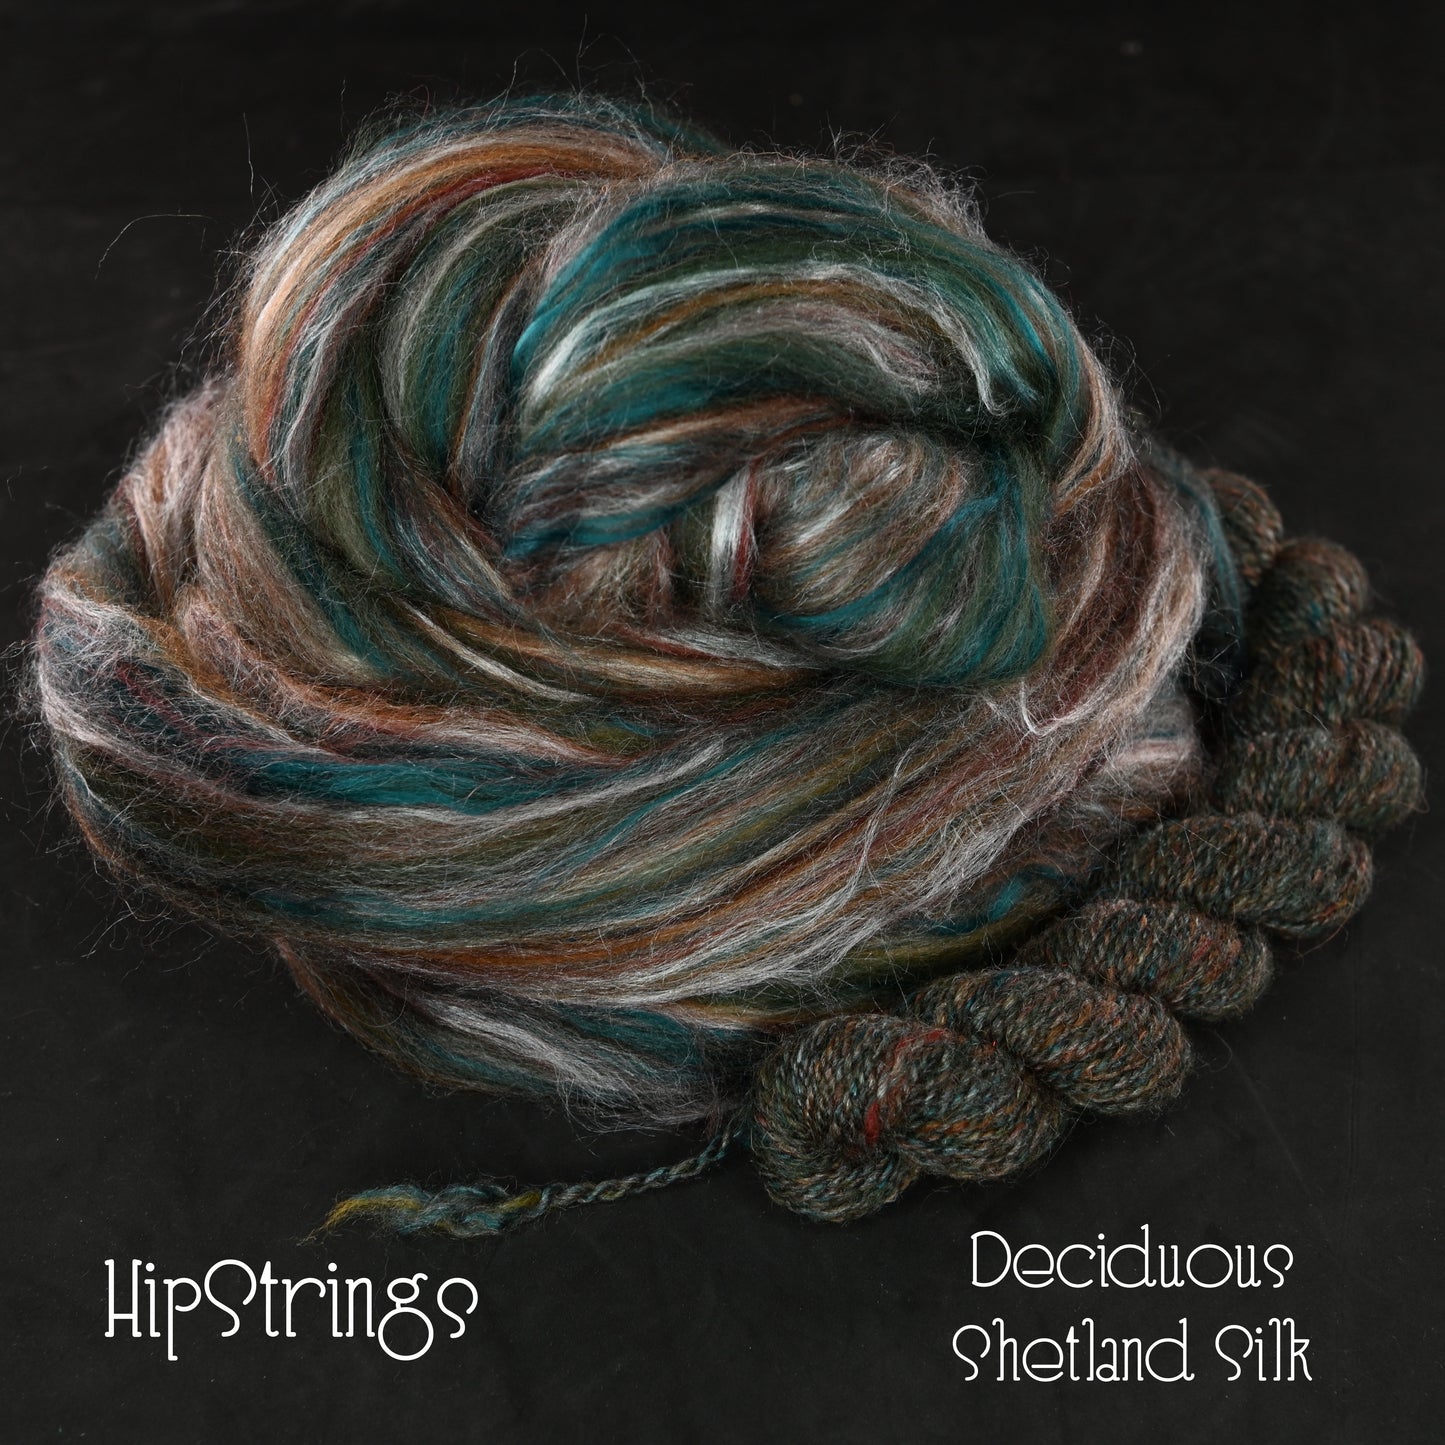 Deciduous Shetland Silk Signature Blend Combed Top - 4 oz